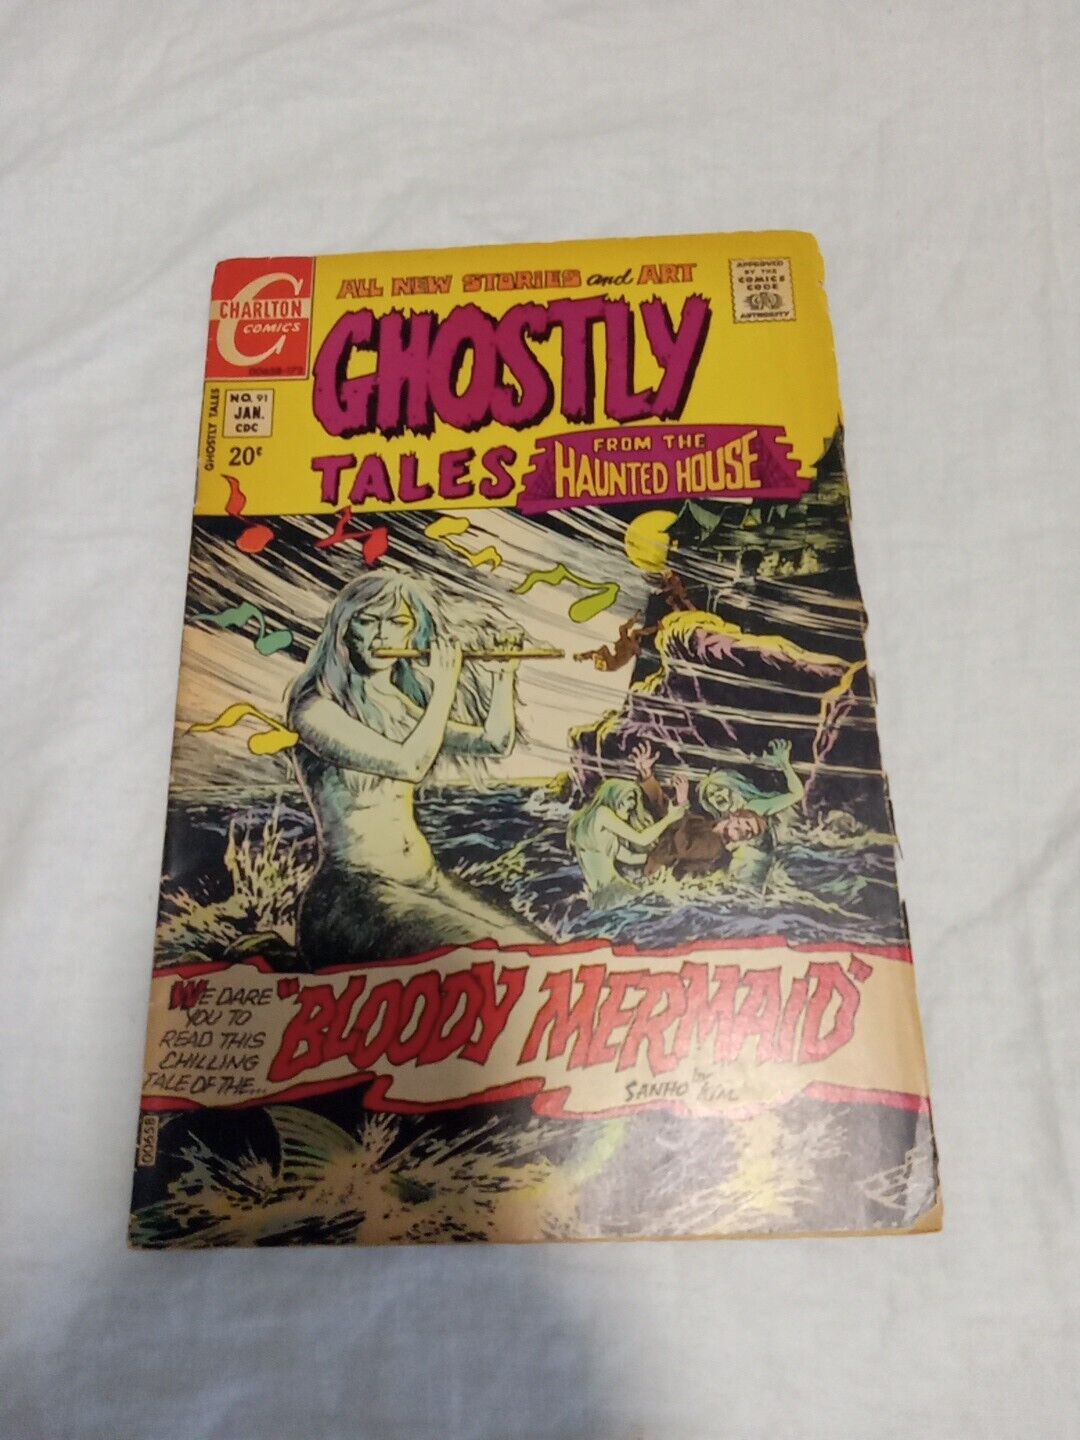 GHOSTLY TALES # 91 (Jan 1972) CHARLTON COMICS 'Bloody Mermaid' Vintage Horror